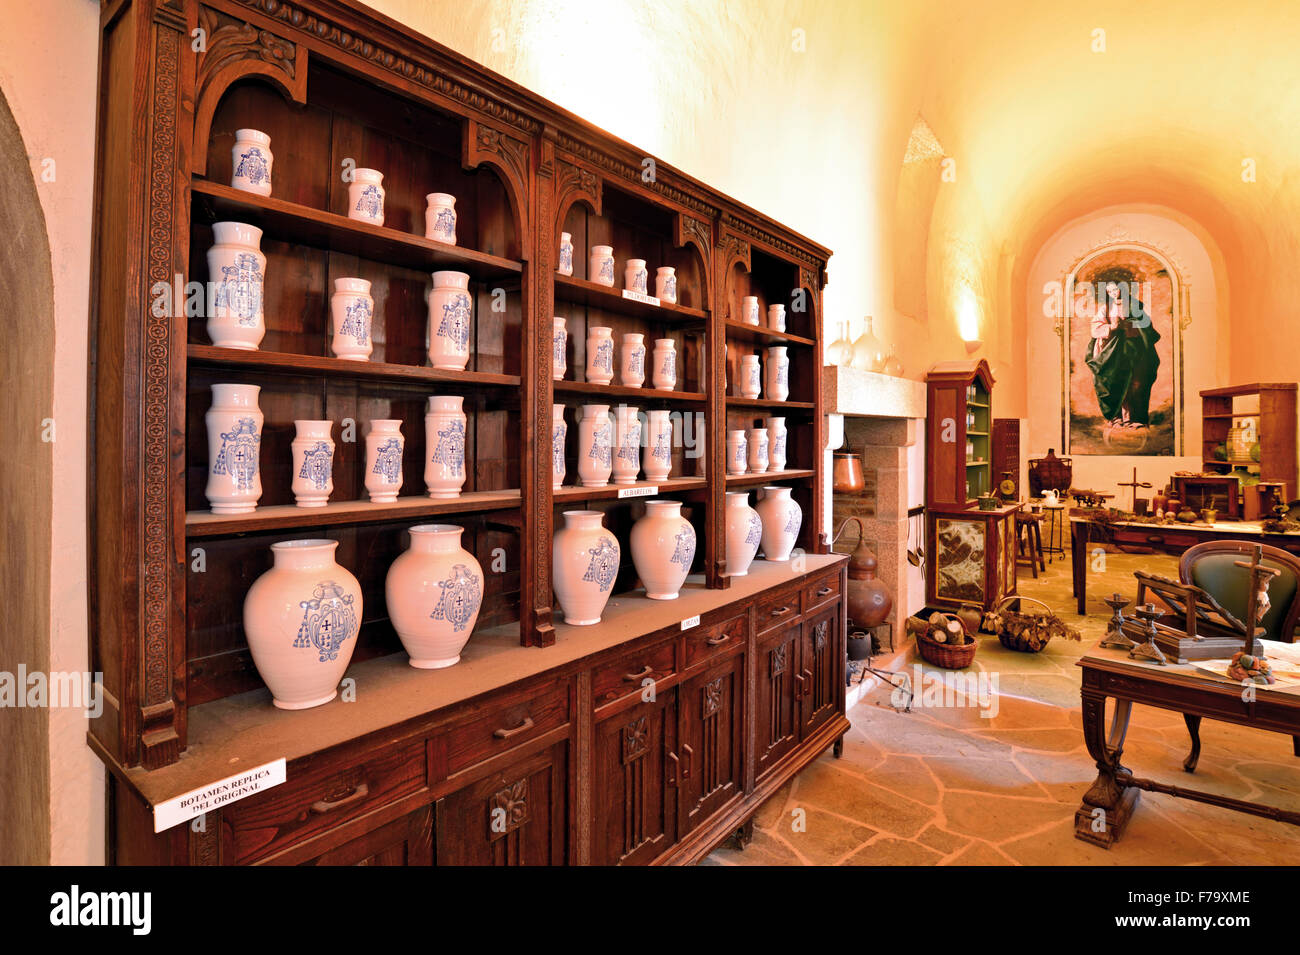 España, Galicia : Interior de la farmacia medieval en el monasterio de Samos Foto de stock